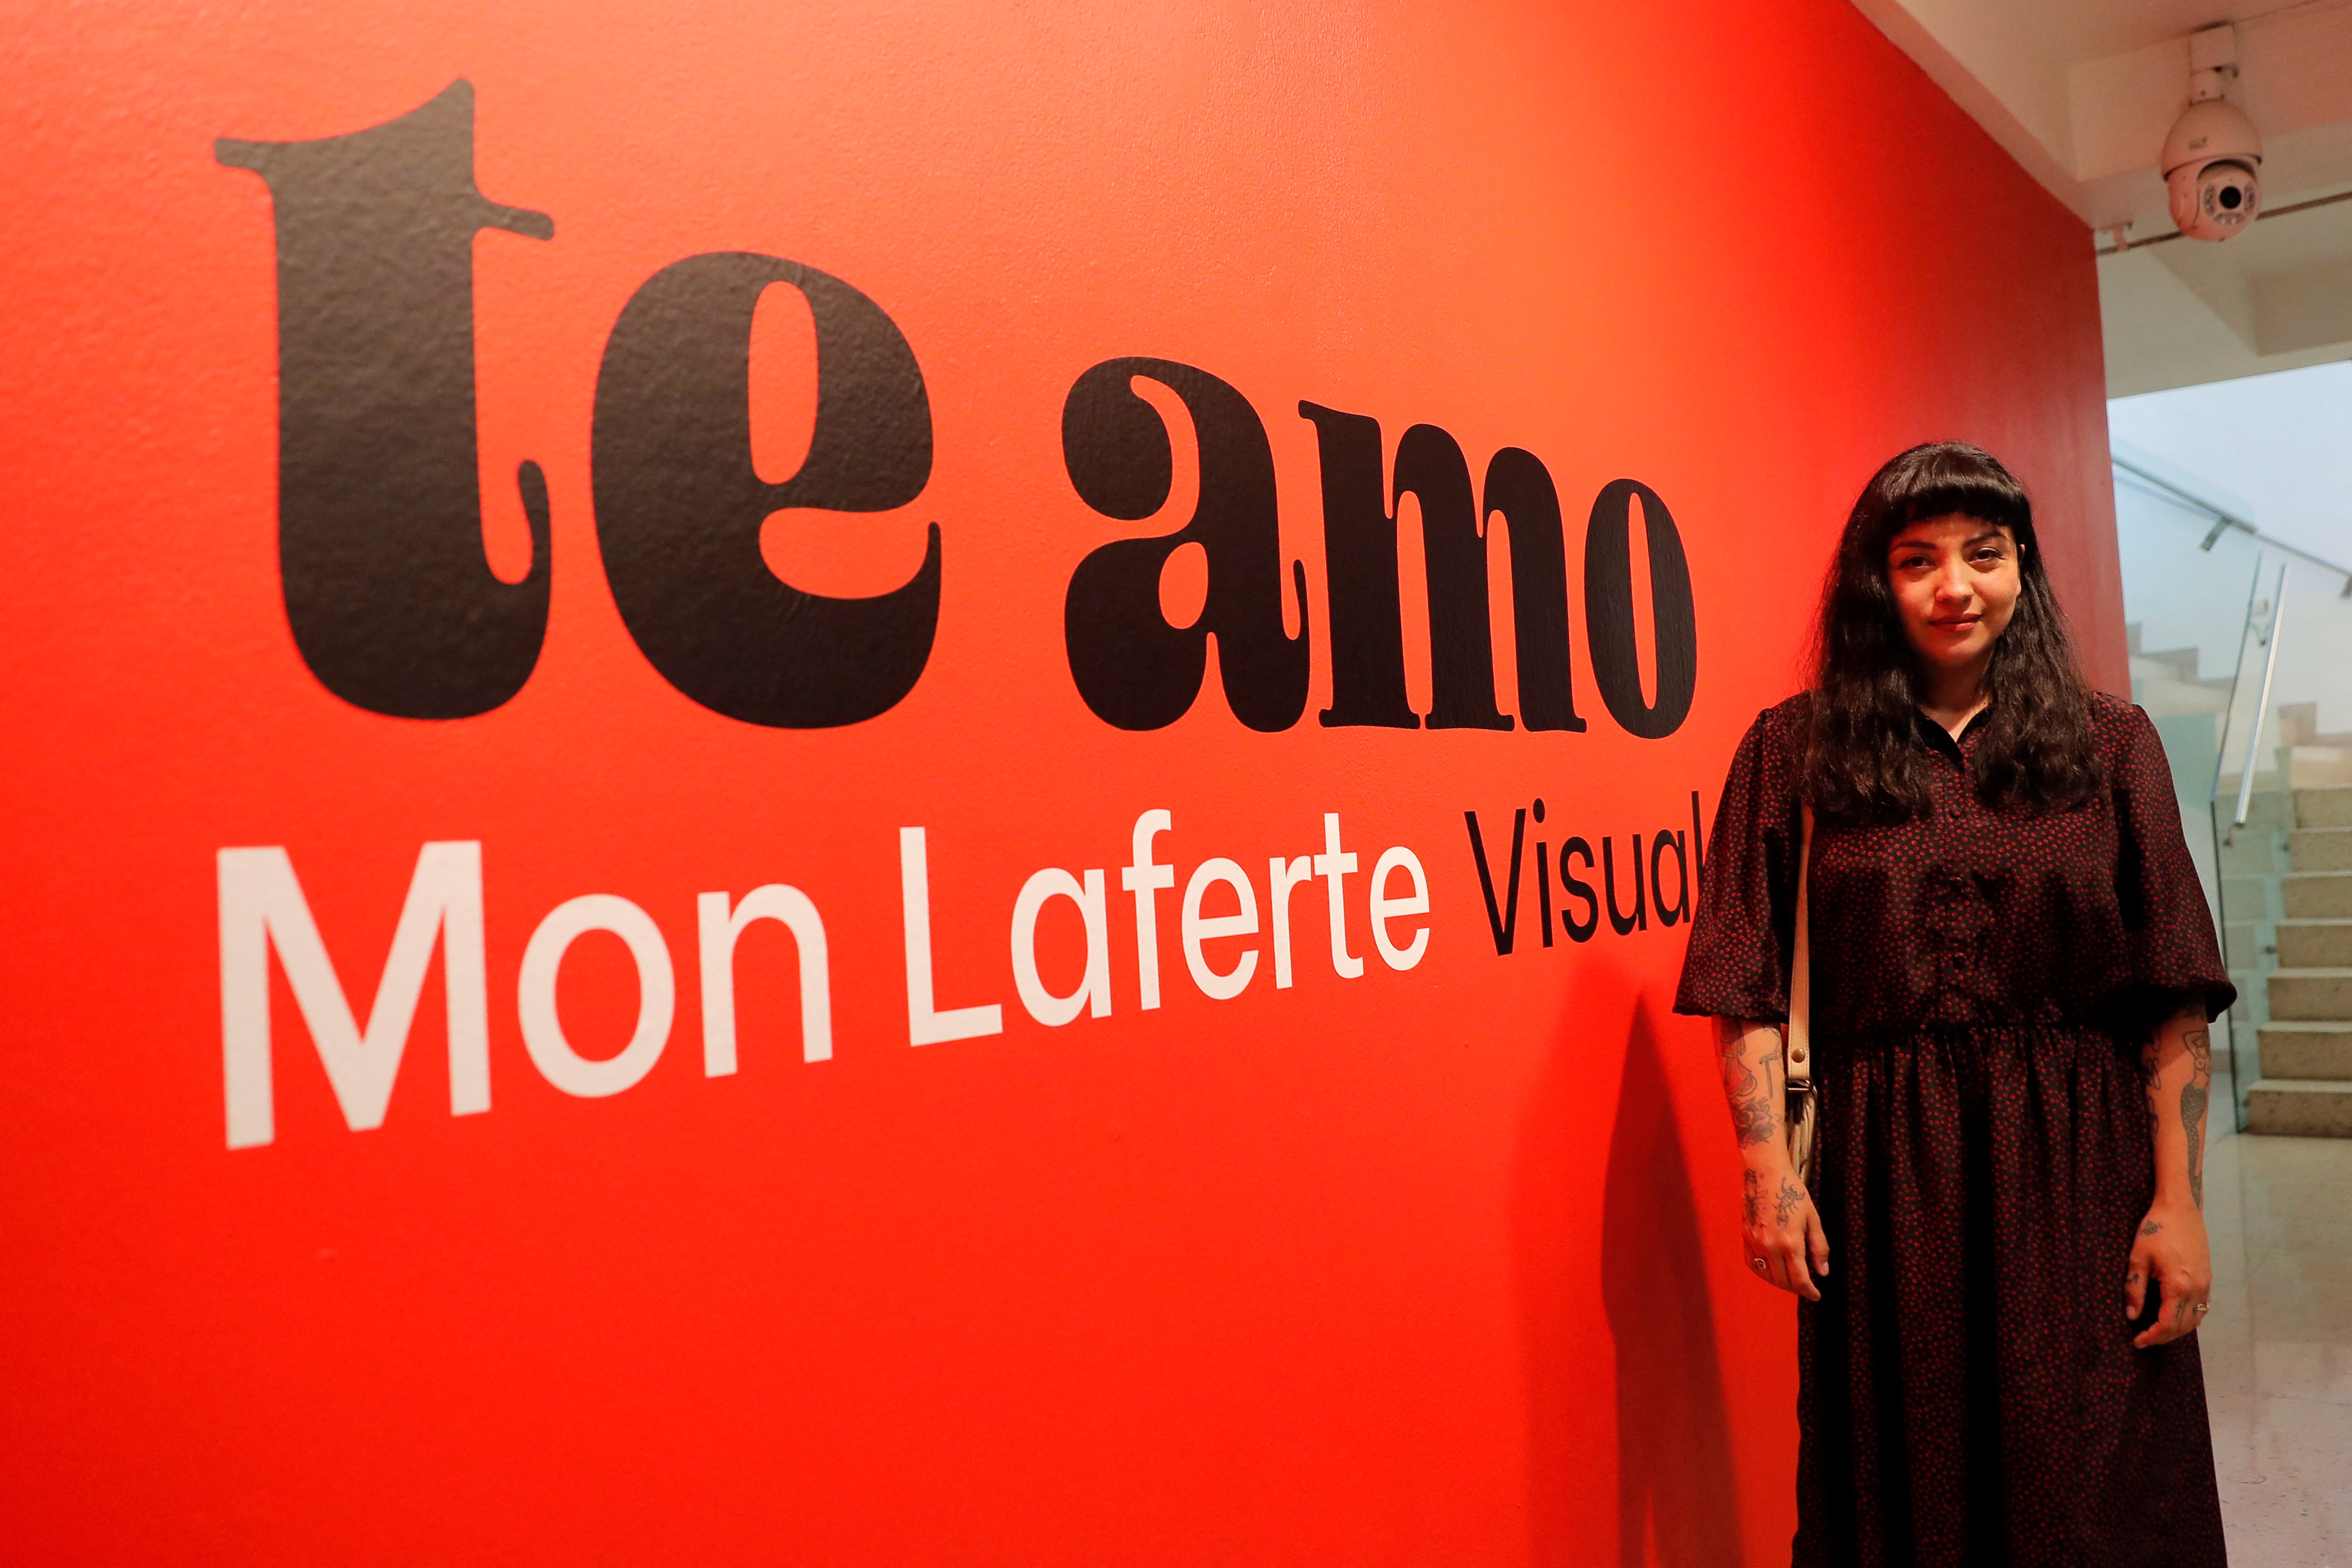 Mon Laferte debutó como artista plástica con gran exposición en Chile